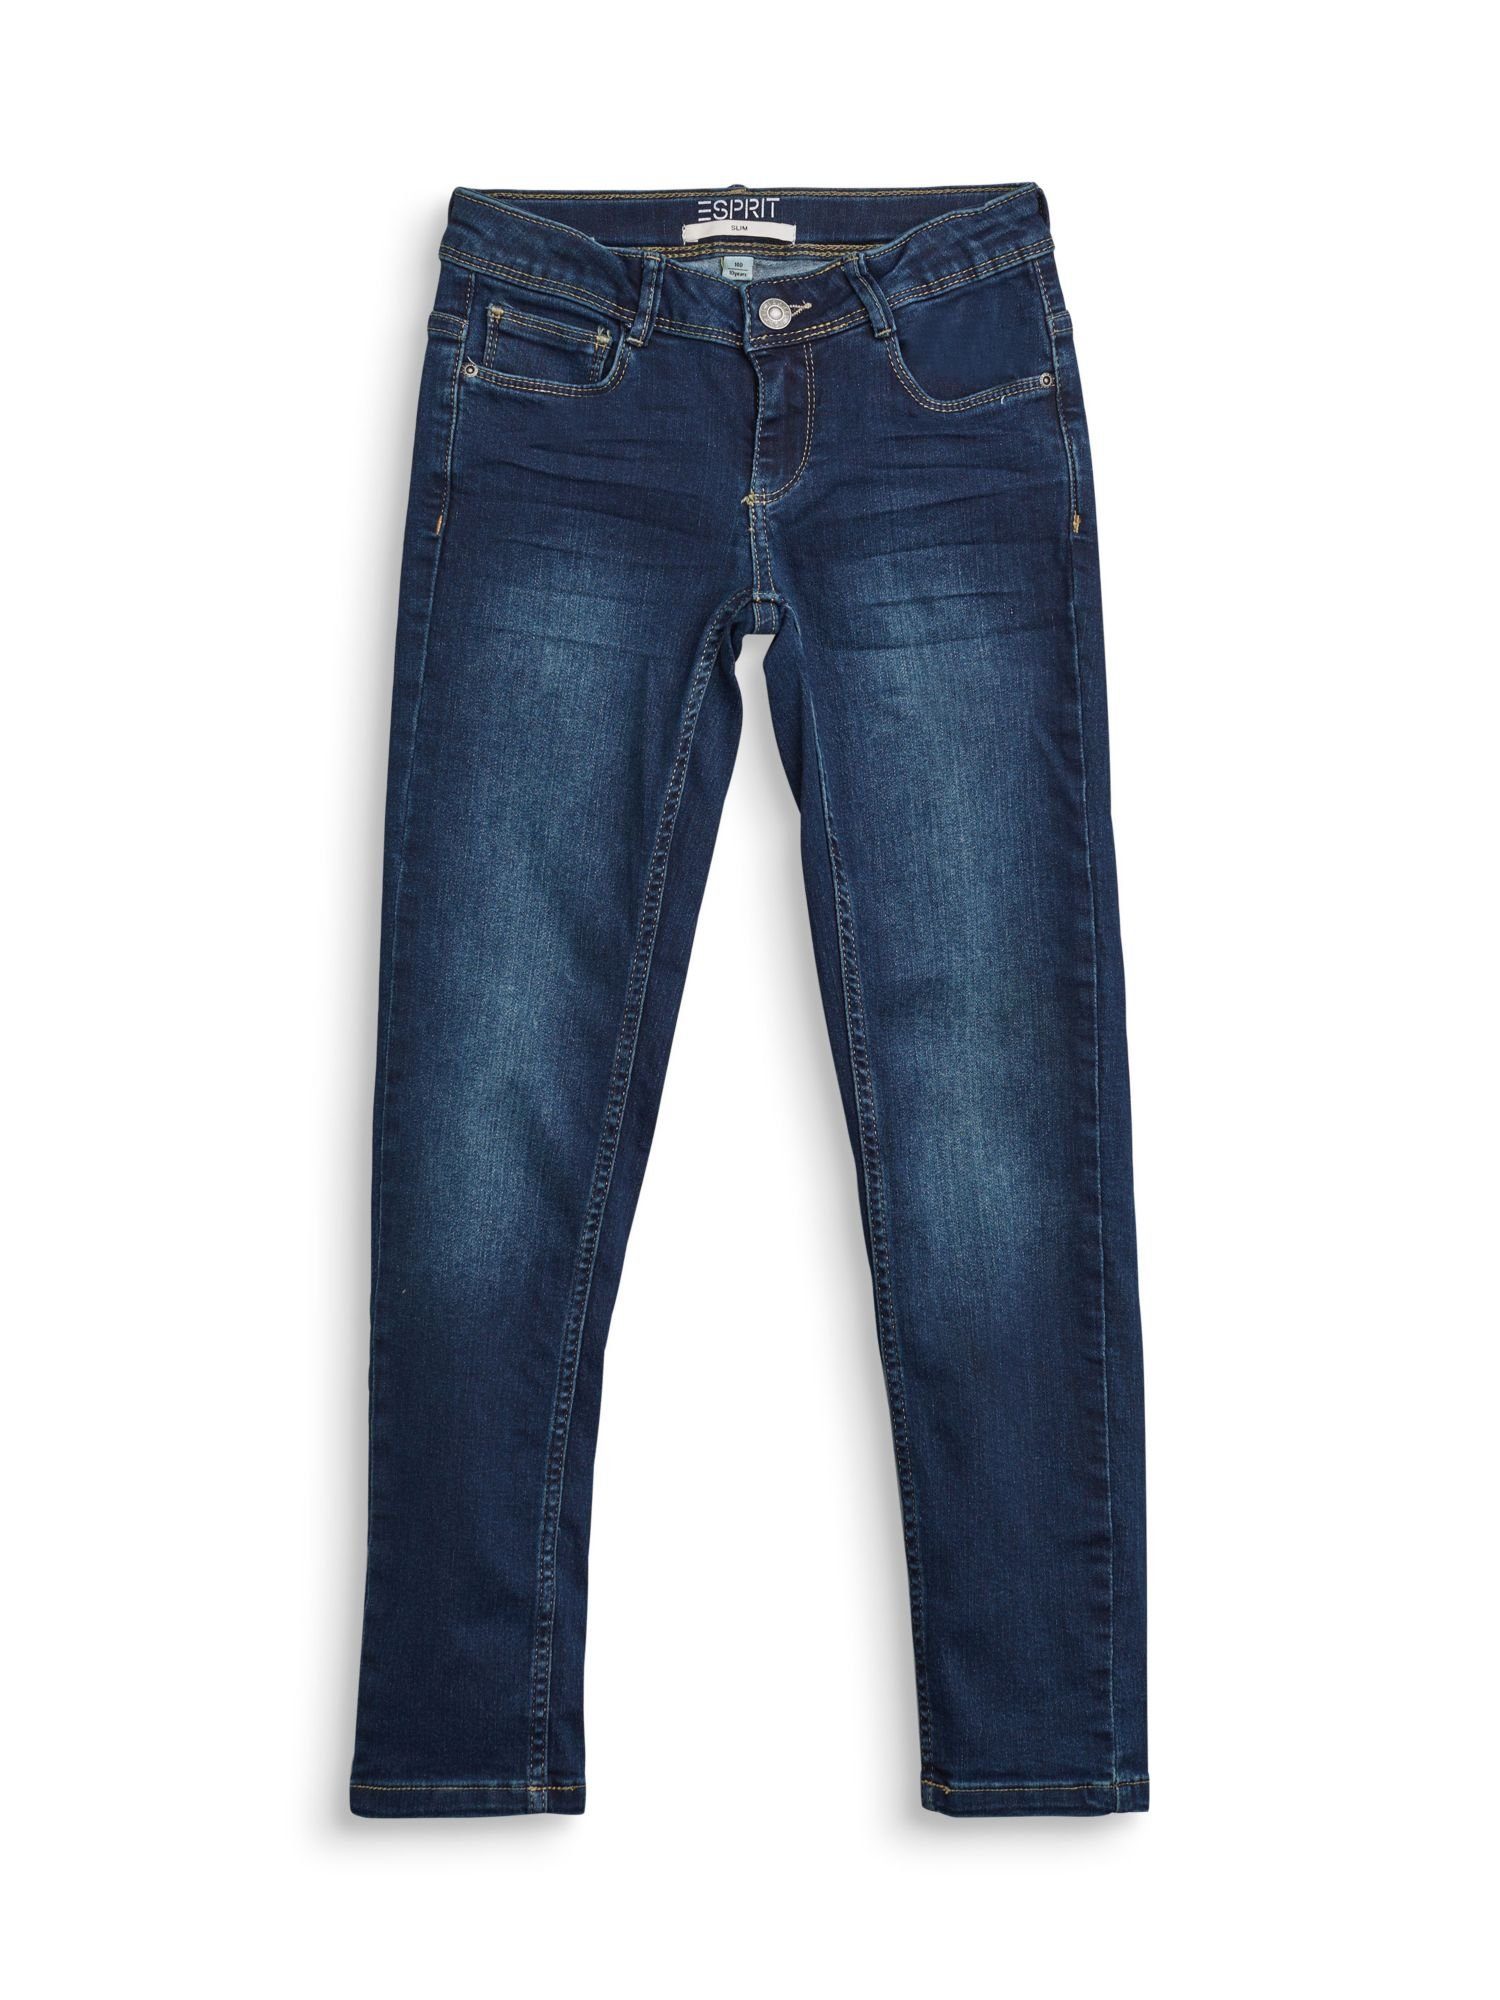 Verstellbund, mit Innen Slim-fit-Jeans Bund Schlaufen, und mit verstellbarer Stretch-Jeans Reißverschluss Weitenservice Knopf und Esprit